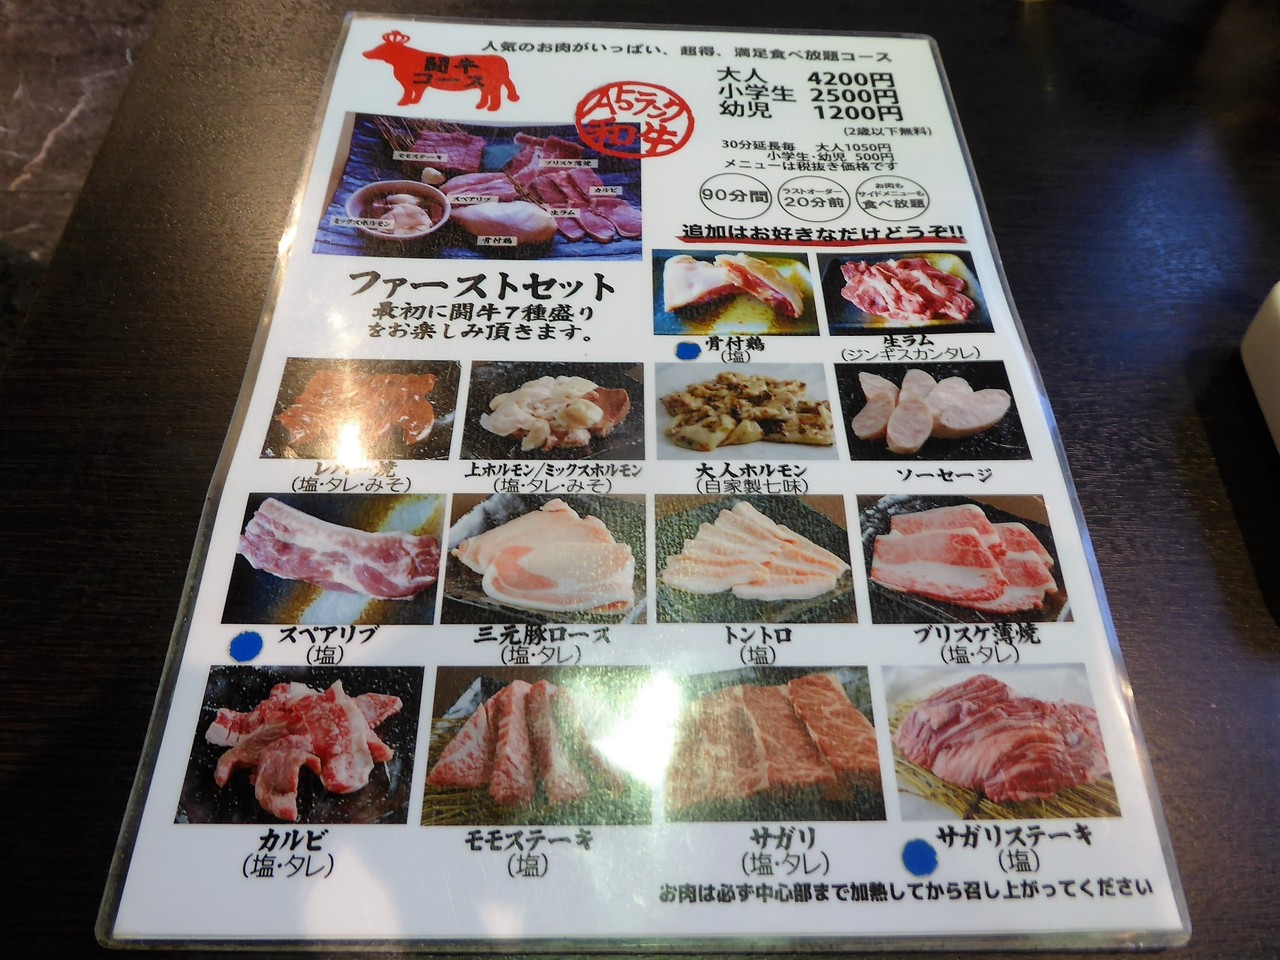 すすきの 焼肉世界チャンピオン 本店でａ５ランク和牛の食べ放題 こんないい肉の食べ放題とかやばい Rubis Life